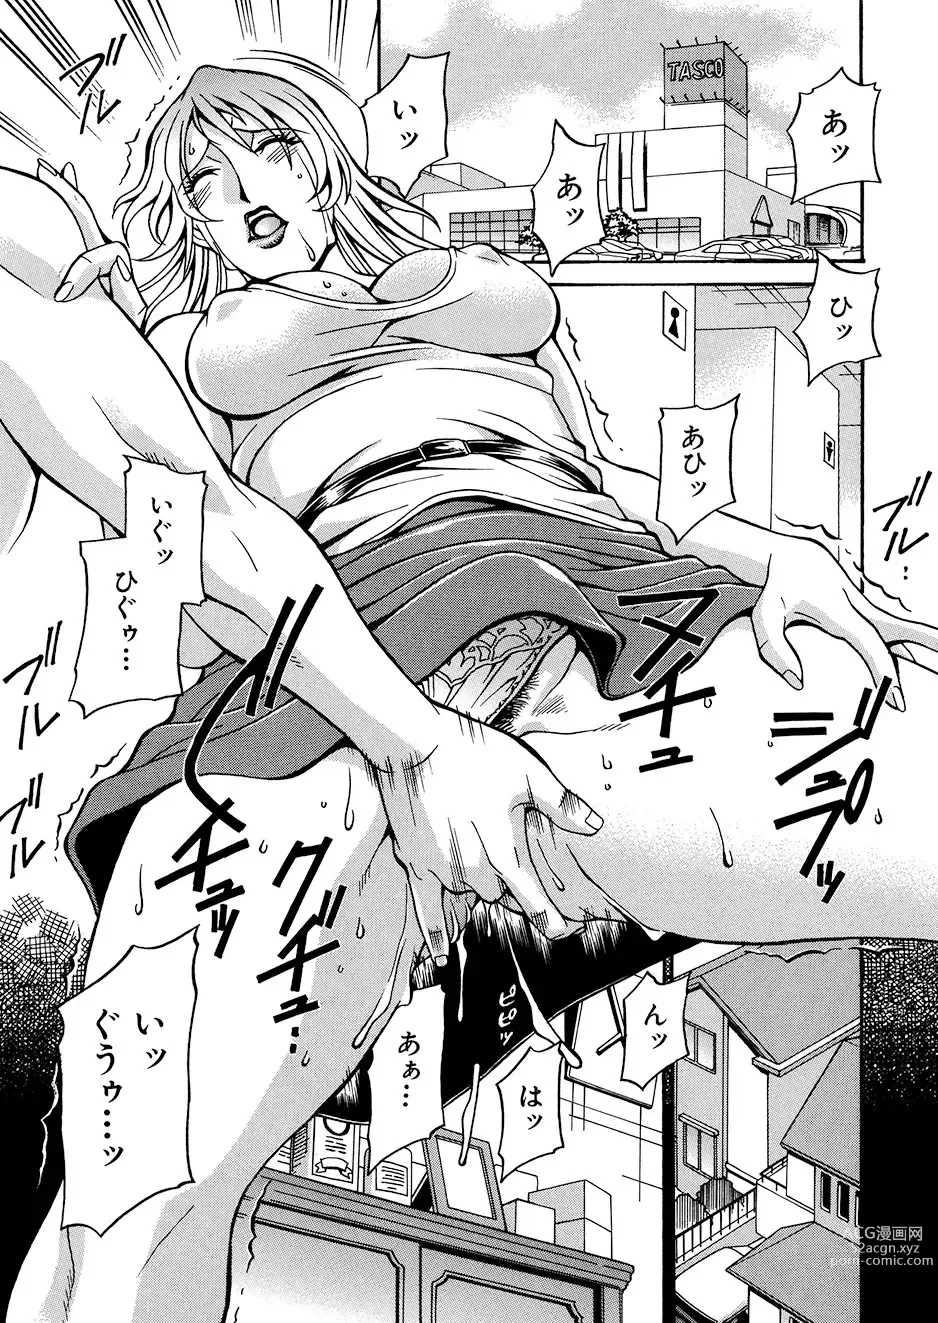 Page 6 of manga Mechiku